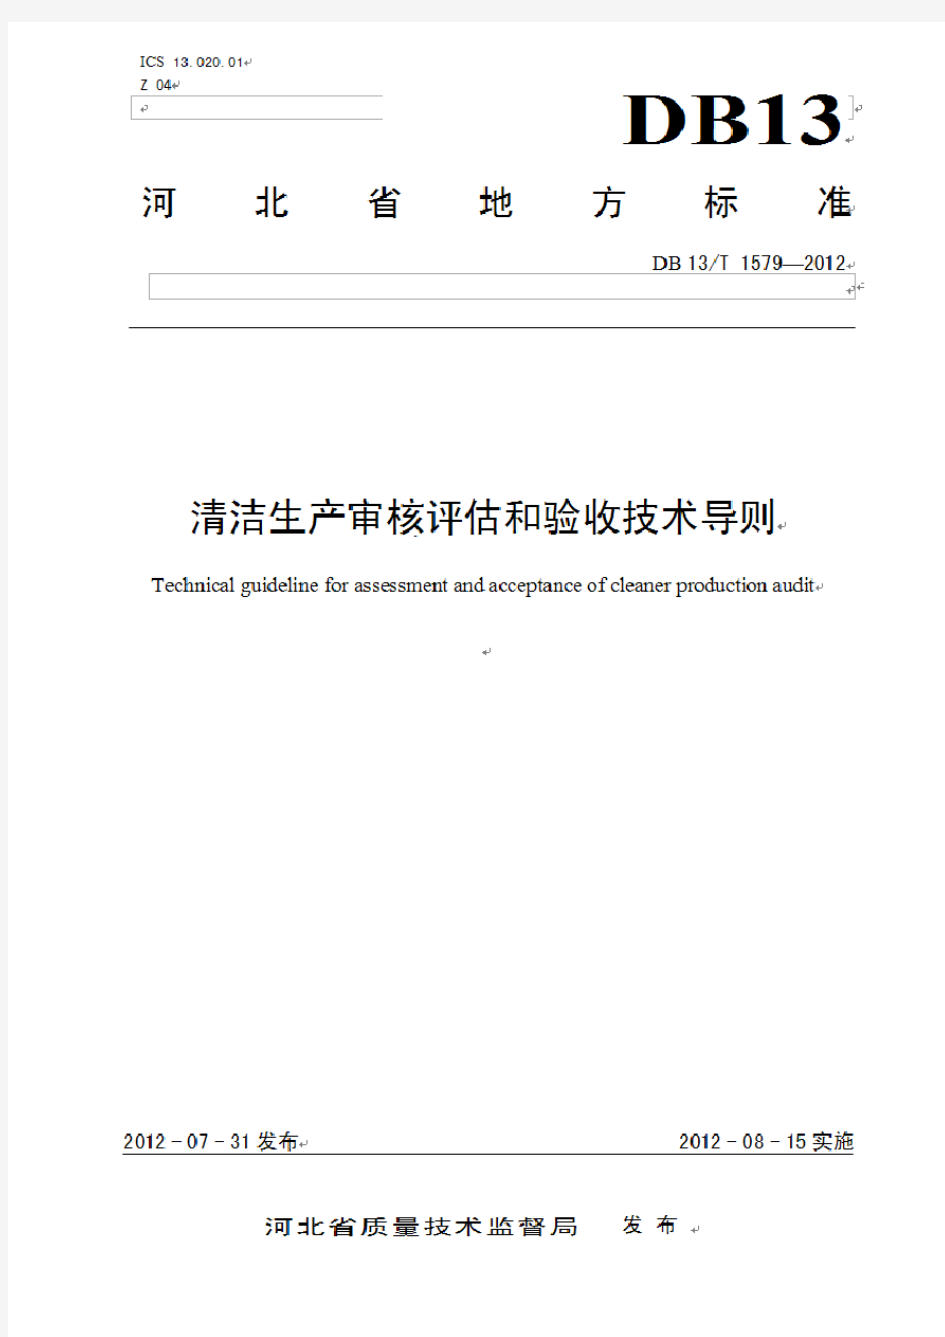 清洁生产审核评估和验收技术导则(河北省)